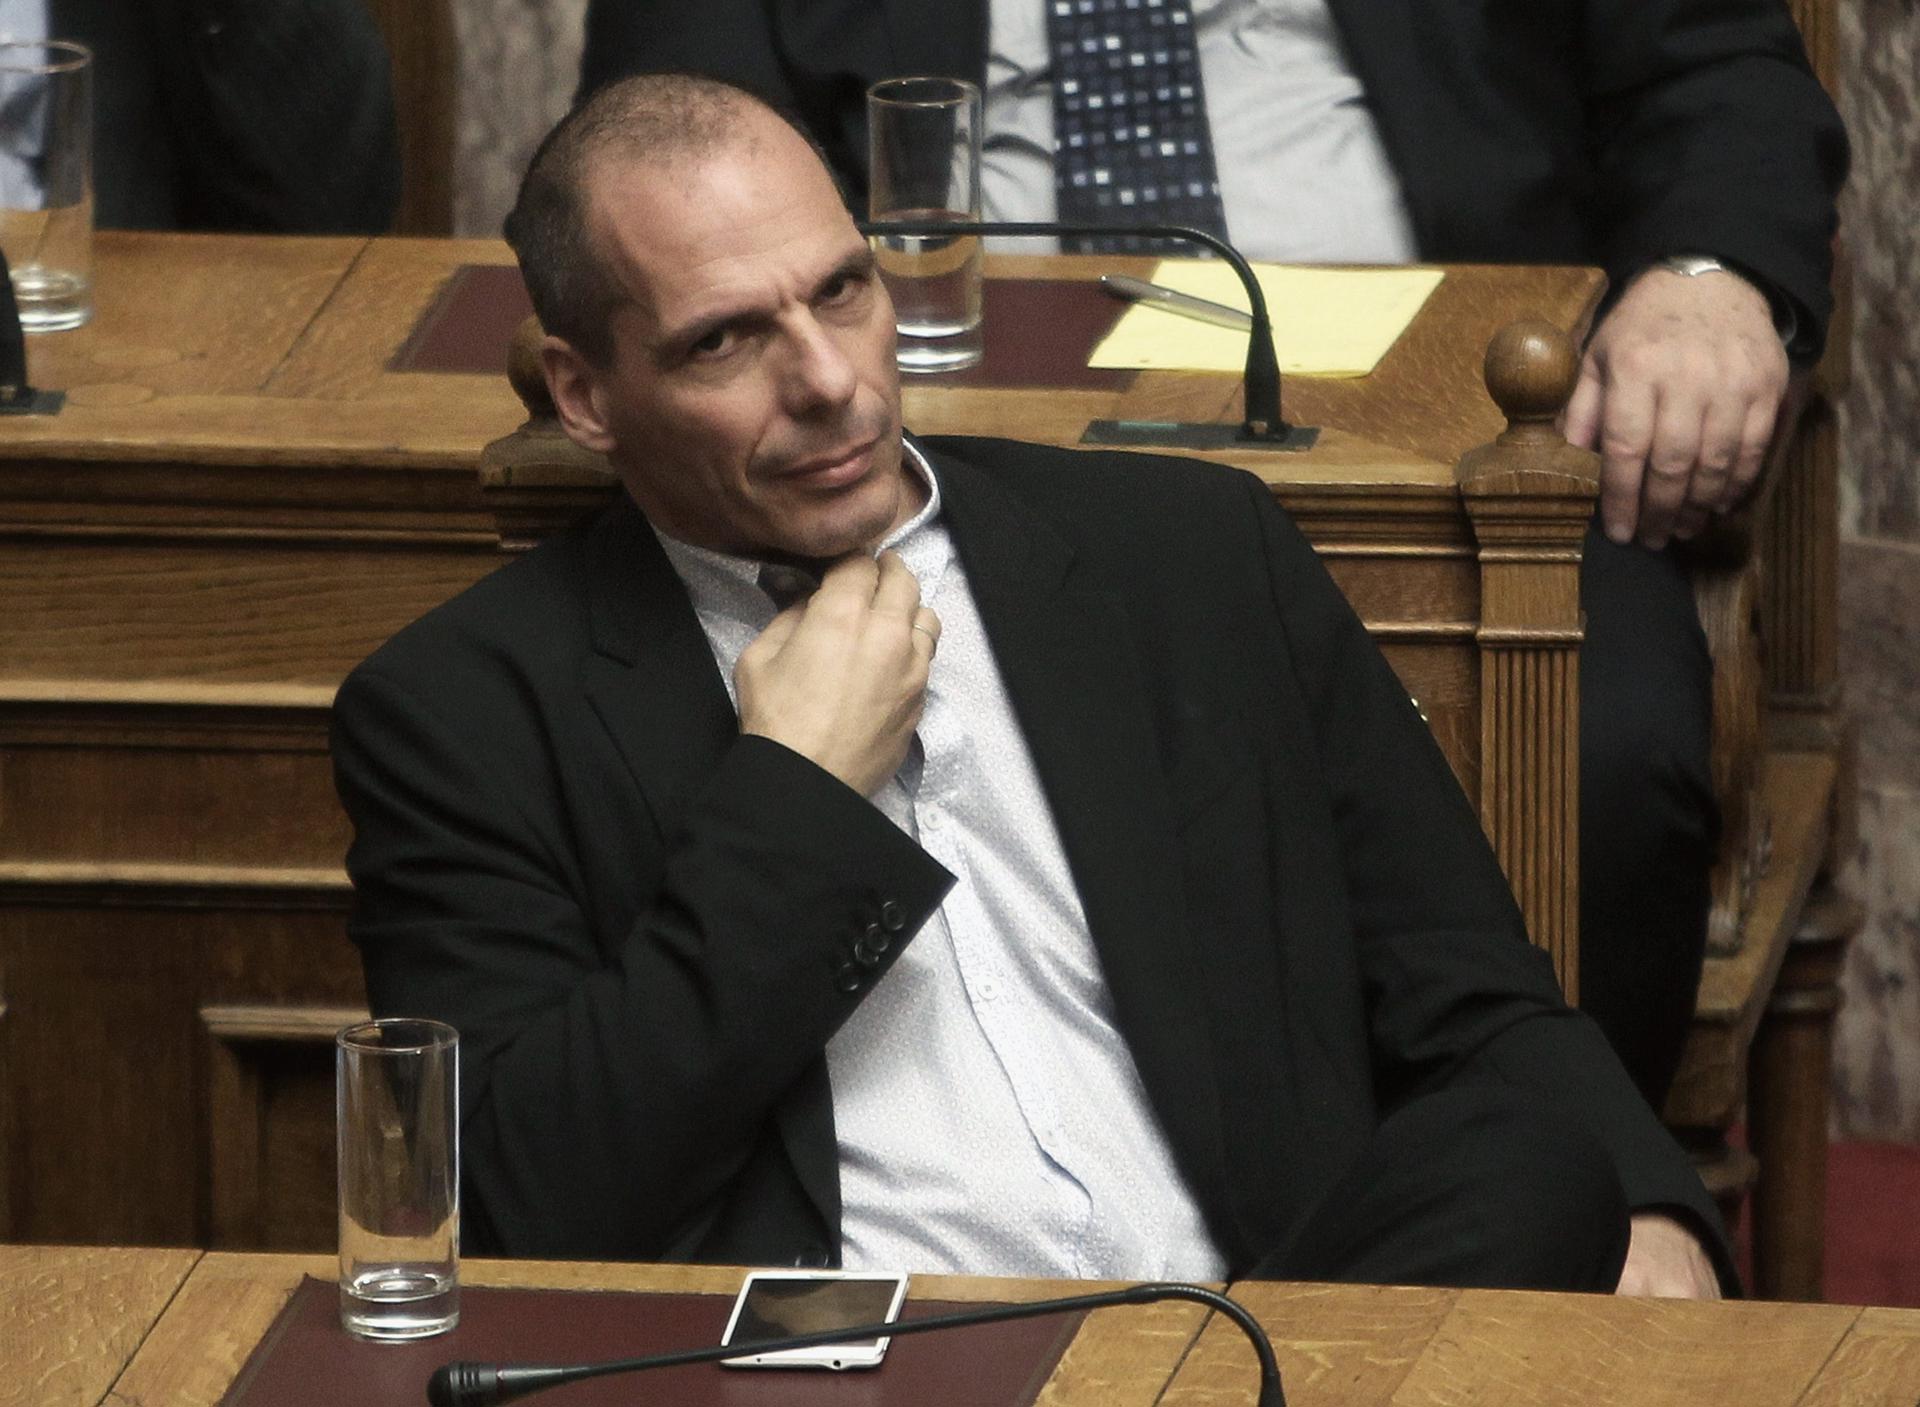 Imagen de archivo del ex ministro griego de finanzas Yanis Varoufakis.